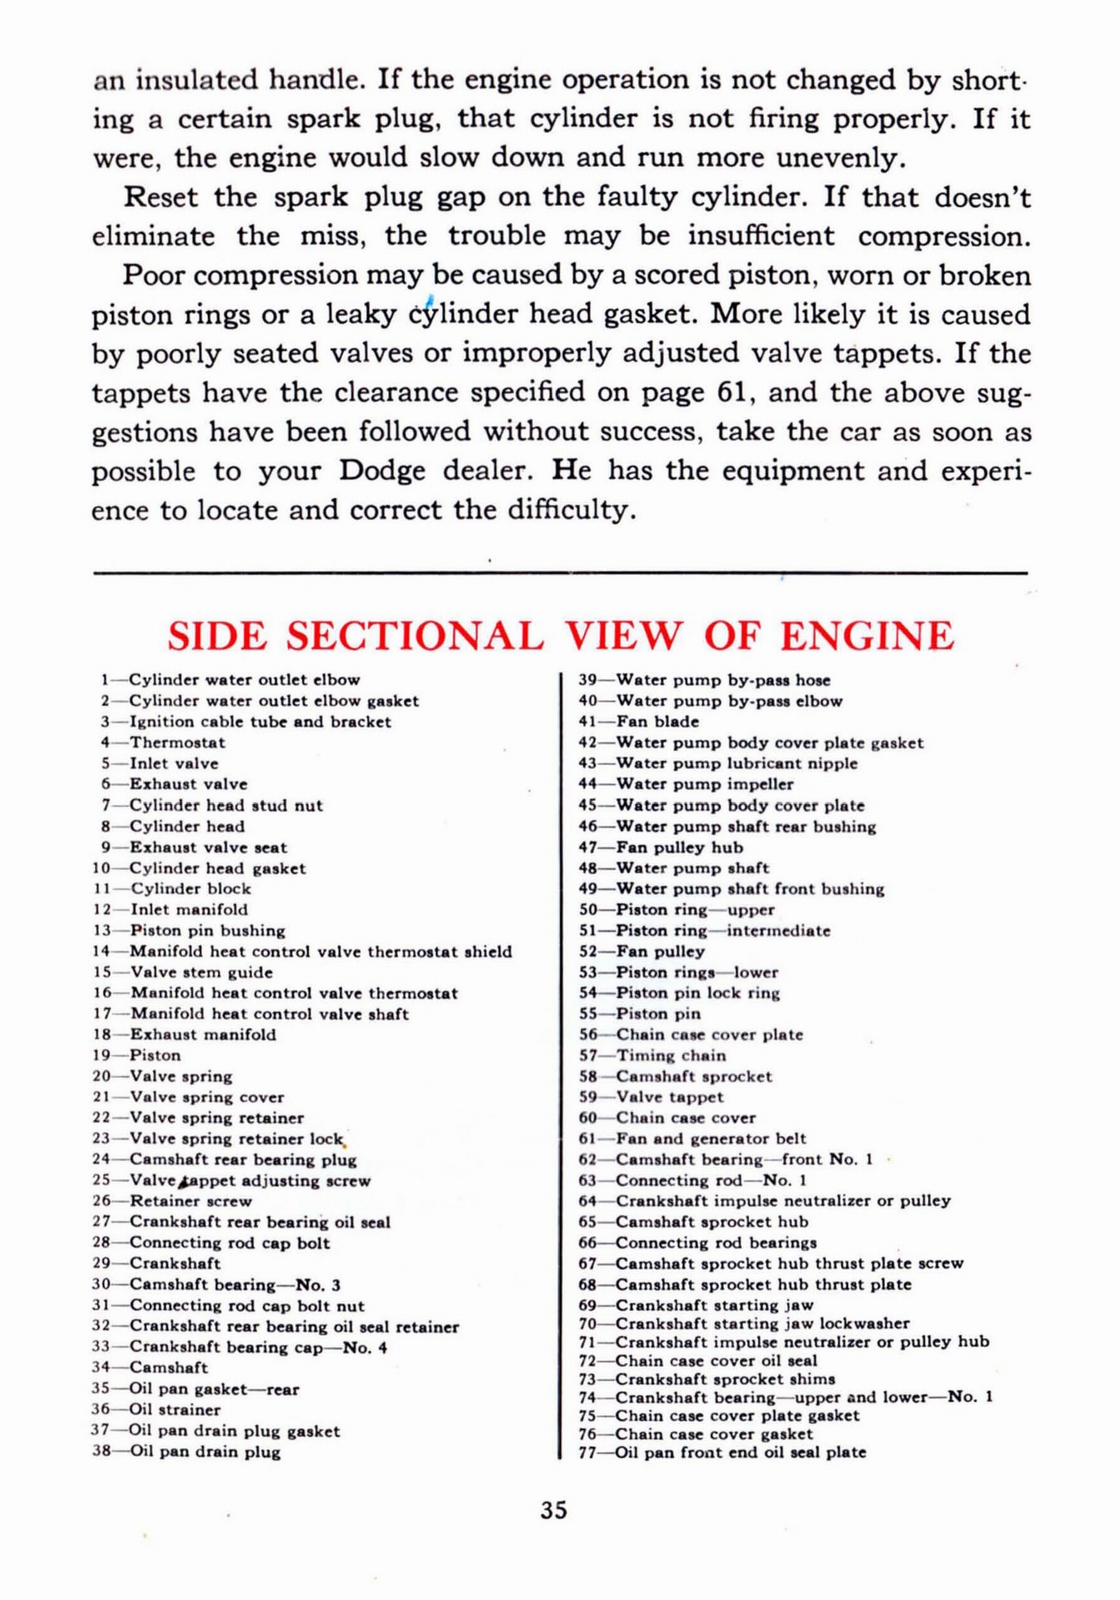 n_1941 Dodge Owners Manual-35.jpg